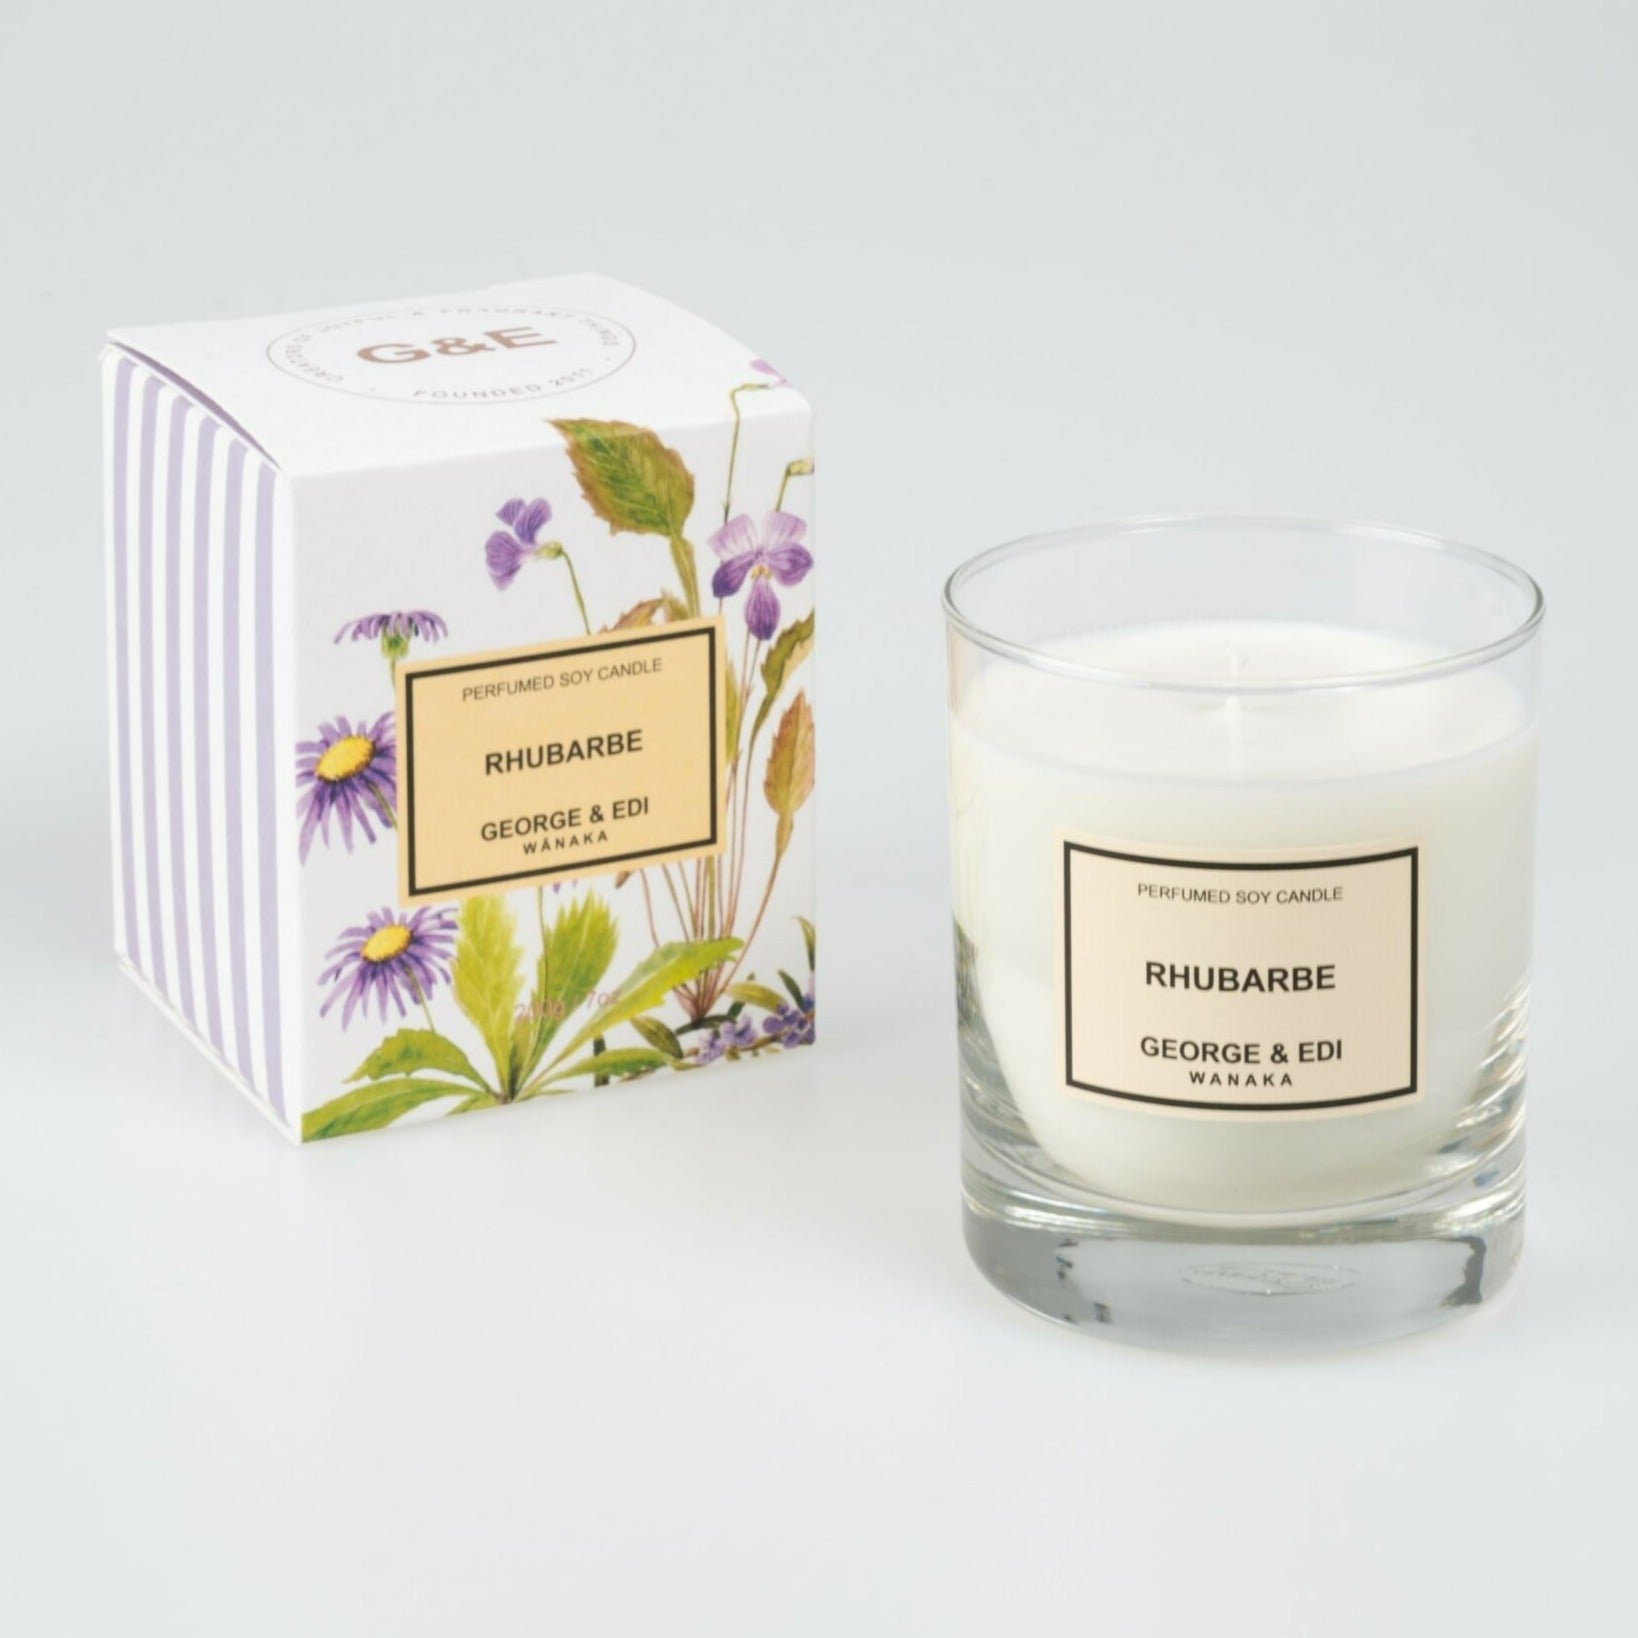 george & edi standard perfumed candle rhubarbe